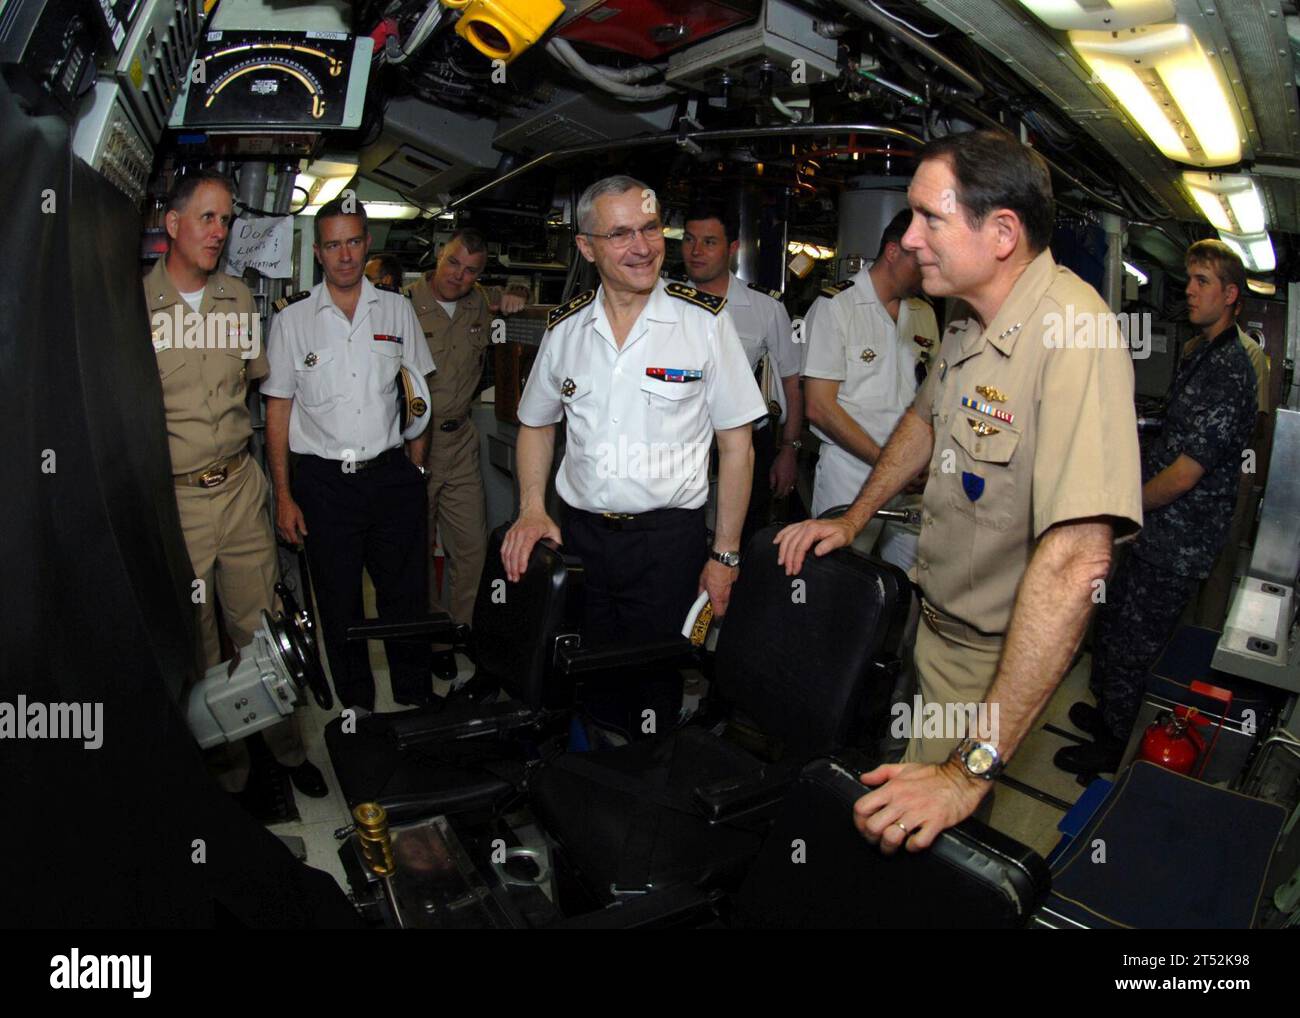 1005147705S-062 NORFOLK (14 mai 2010) le vice-amiral John J. Donnelly, commandant des forces sous-marines, montre le vice-amiral Jean-François Baud, commandant les Forces océaniques stratégiques, la salle de contrôle du sous-marin d'attaque de classe Los Angeles USS Scranton (SSN 756). Baud a visité le quartier général des forces sous-marines pour discuter des opérations en cours et de sujets bilatéraux connexes. Marine Banque D'Images